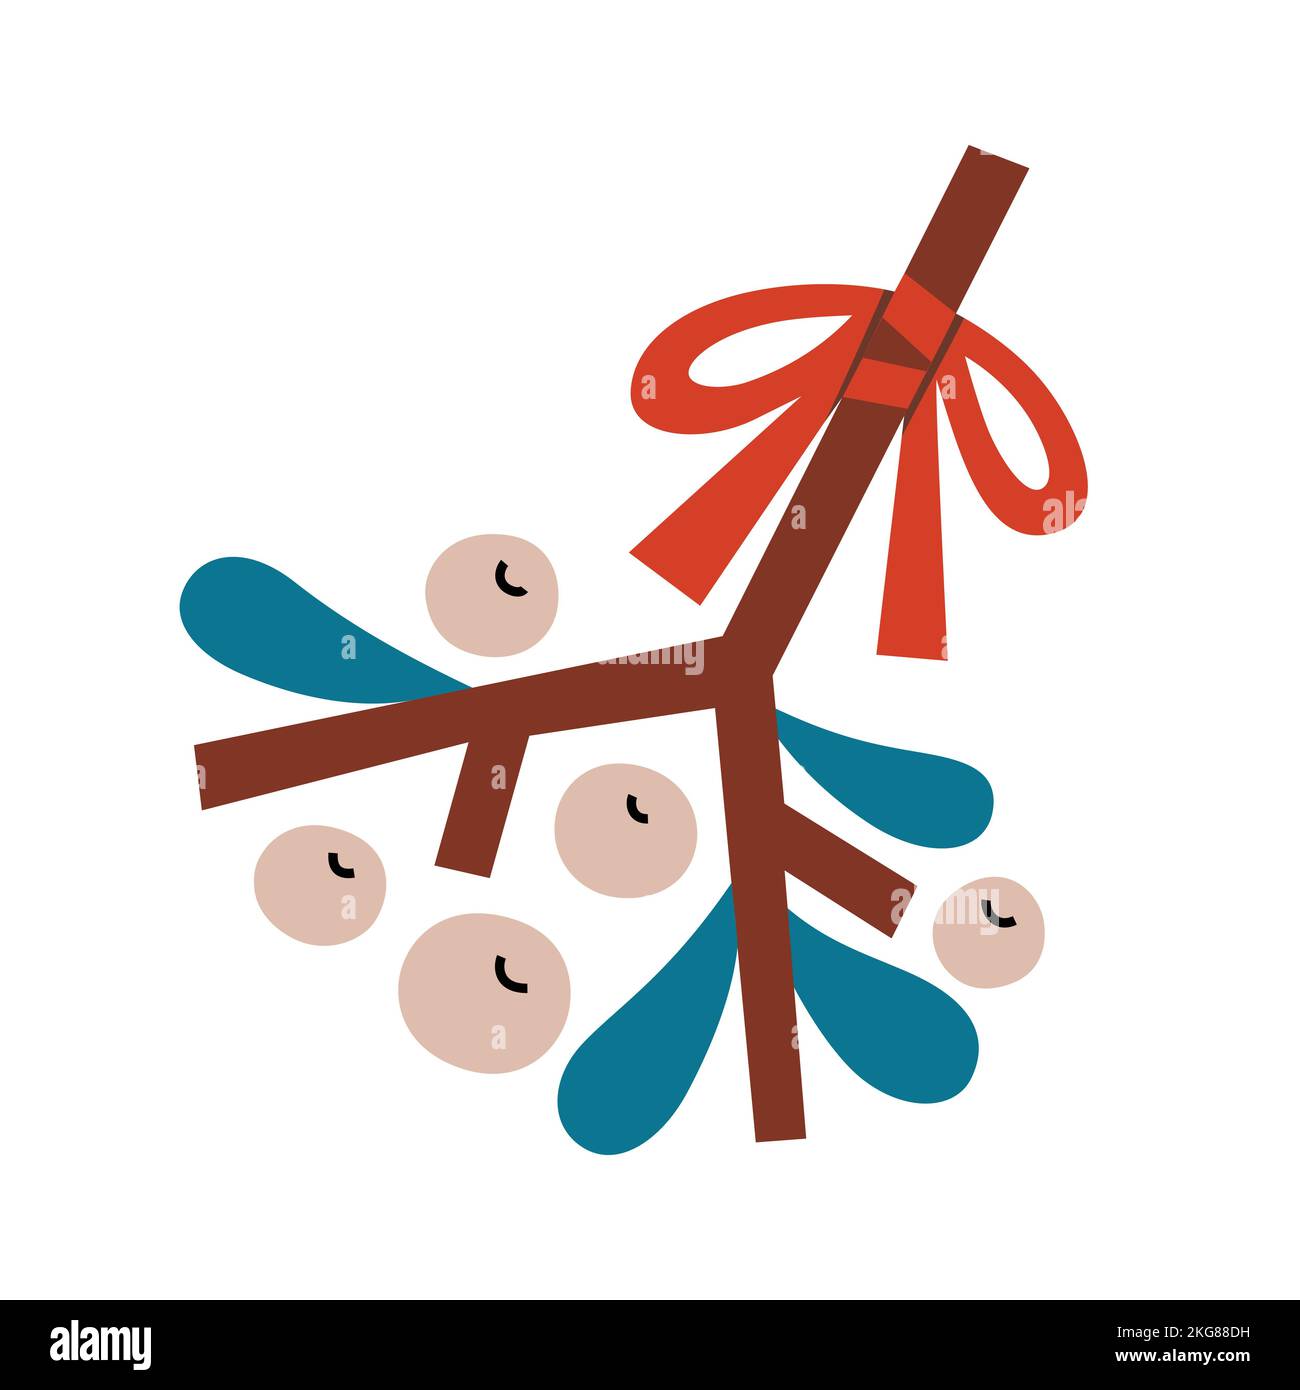 Weihnachtsmistel mit Beeren und rotem Band, einfache abstrakte Cliparts, isolierte Vektorgrafiken Stock Vektor